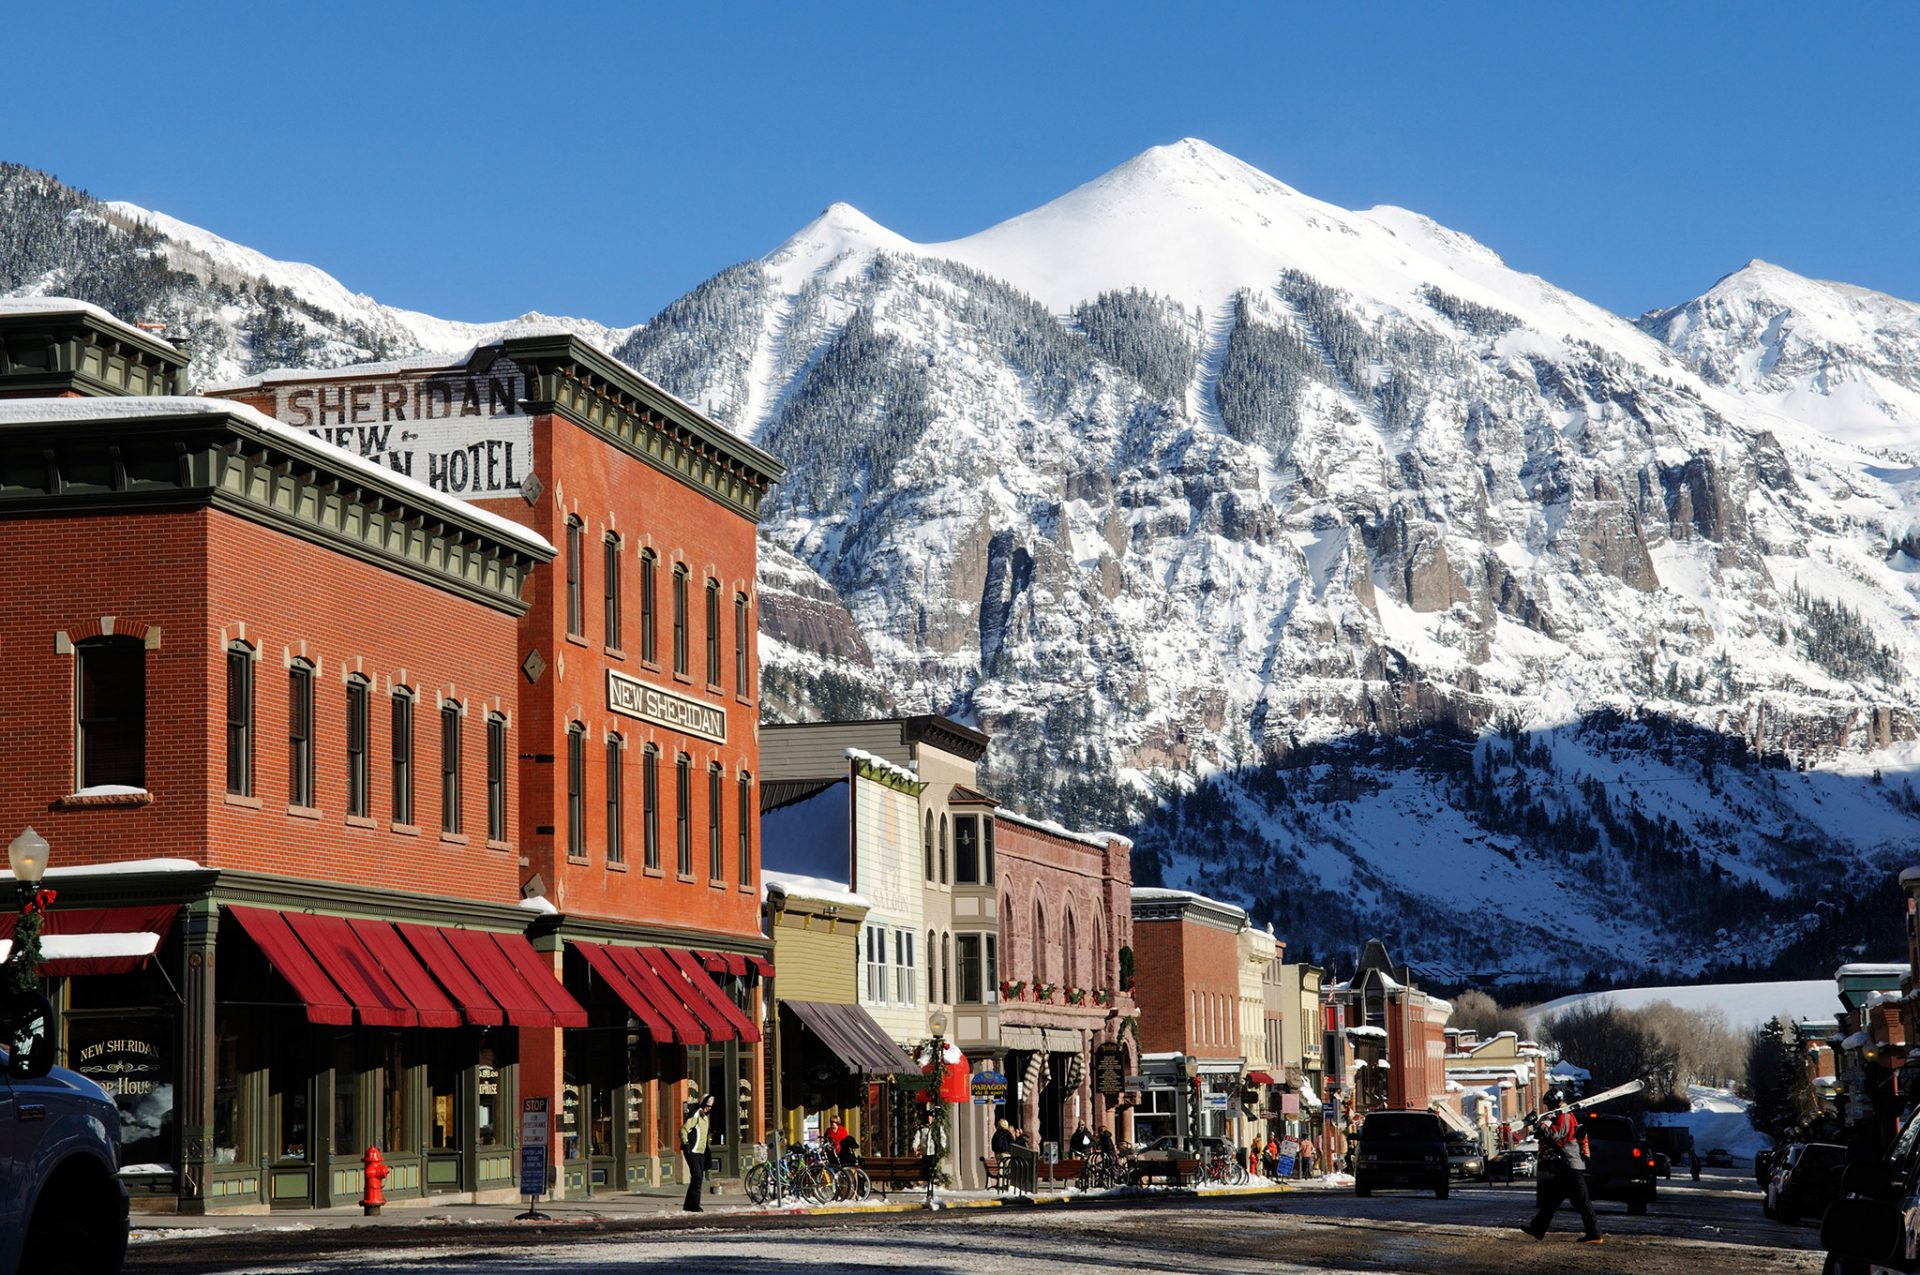 Colorado mountain towns